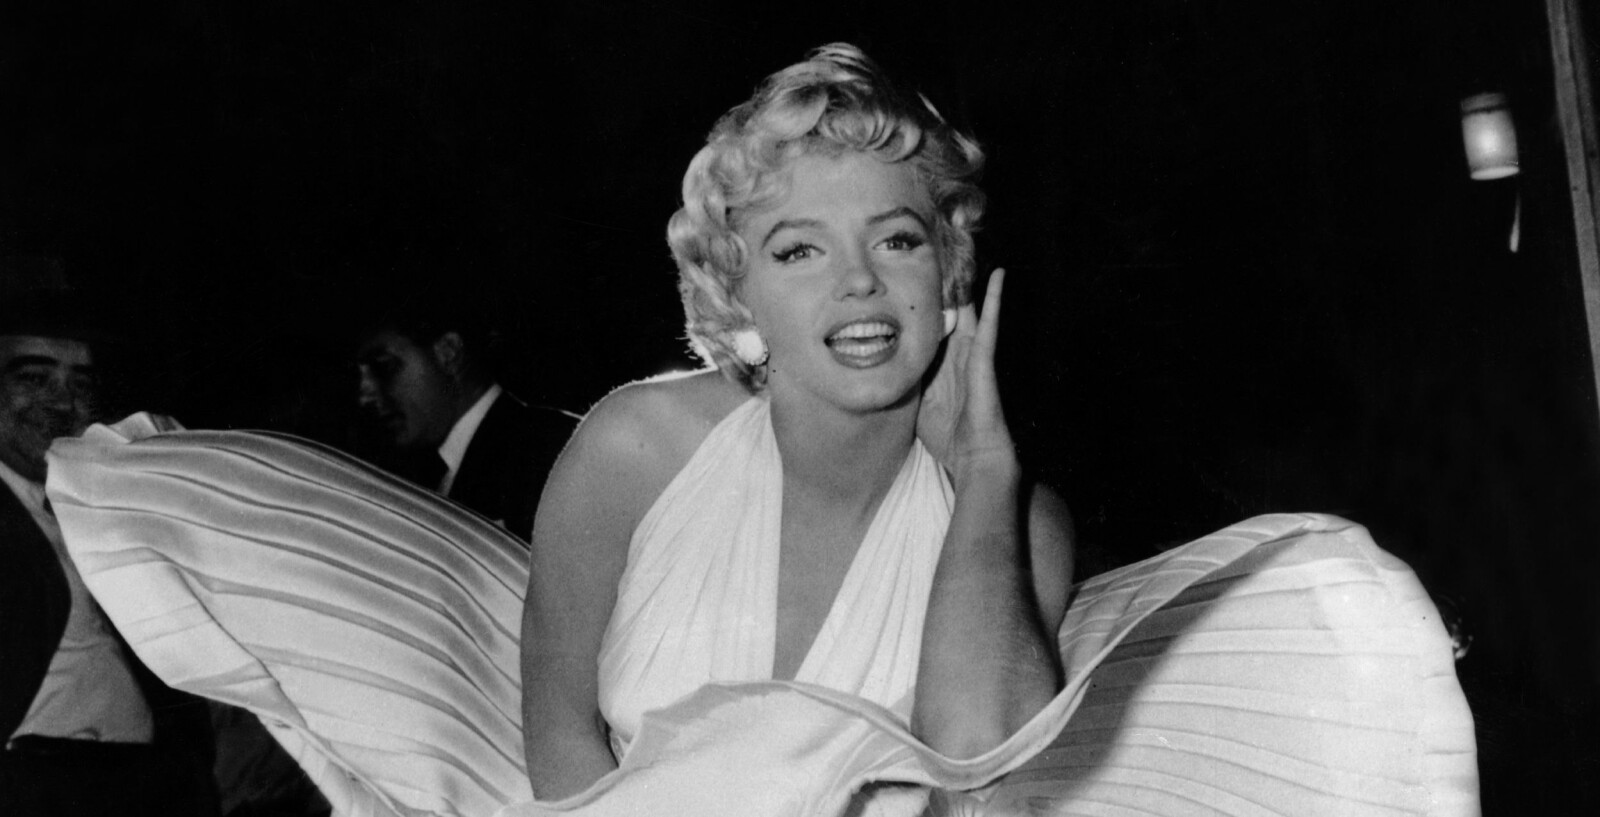 <b><SPAN CLASS=BOLD>BAK I LØYPA:</b></span> Hverken Marilyn Monroe eller andre i den lange rekken av John F. Kennedys kvinnebekjentskaper nådde opp til Inga Arvad, i hvert fall når det kom til interesse fra FBIs spionjegere.